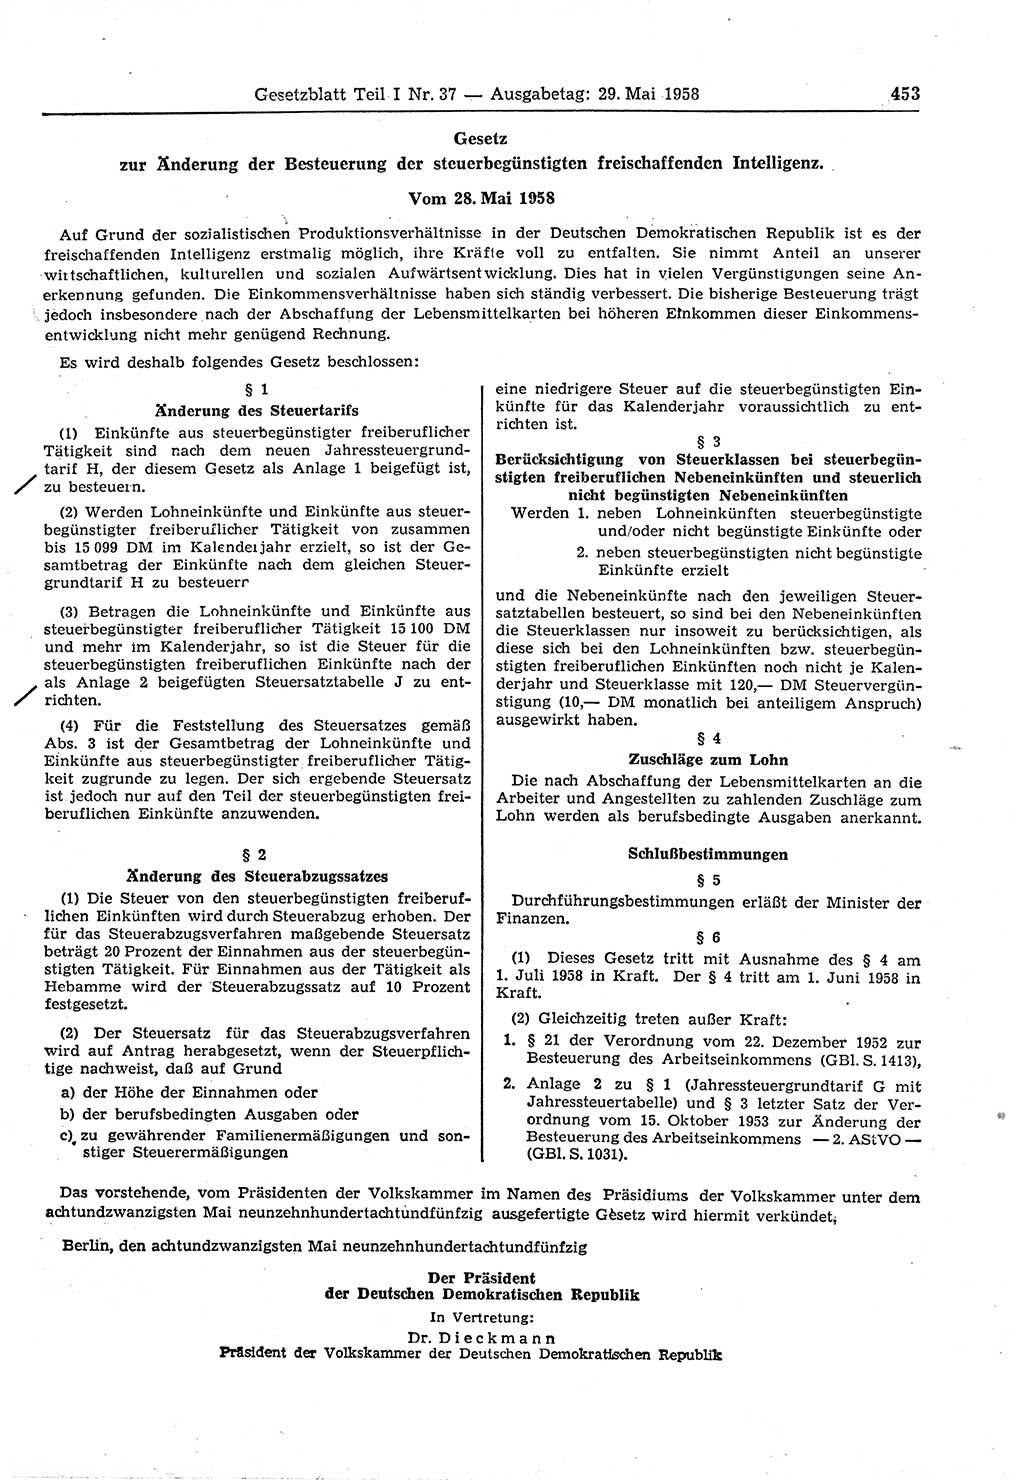 Gesetzblatt (GBl.) der Deutschen Demokratischen Republik (DDR) Teil Ⅰ 1958, Seite 453 (GBl. DDR Ⅰ 1958, S. 453)